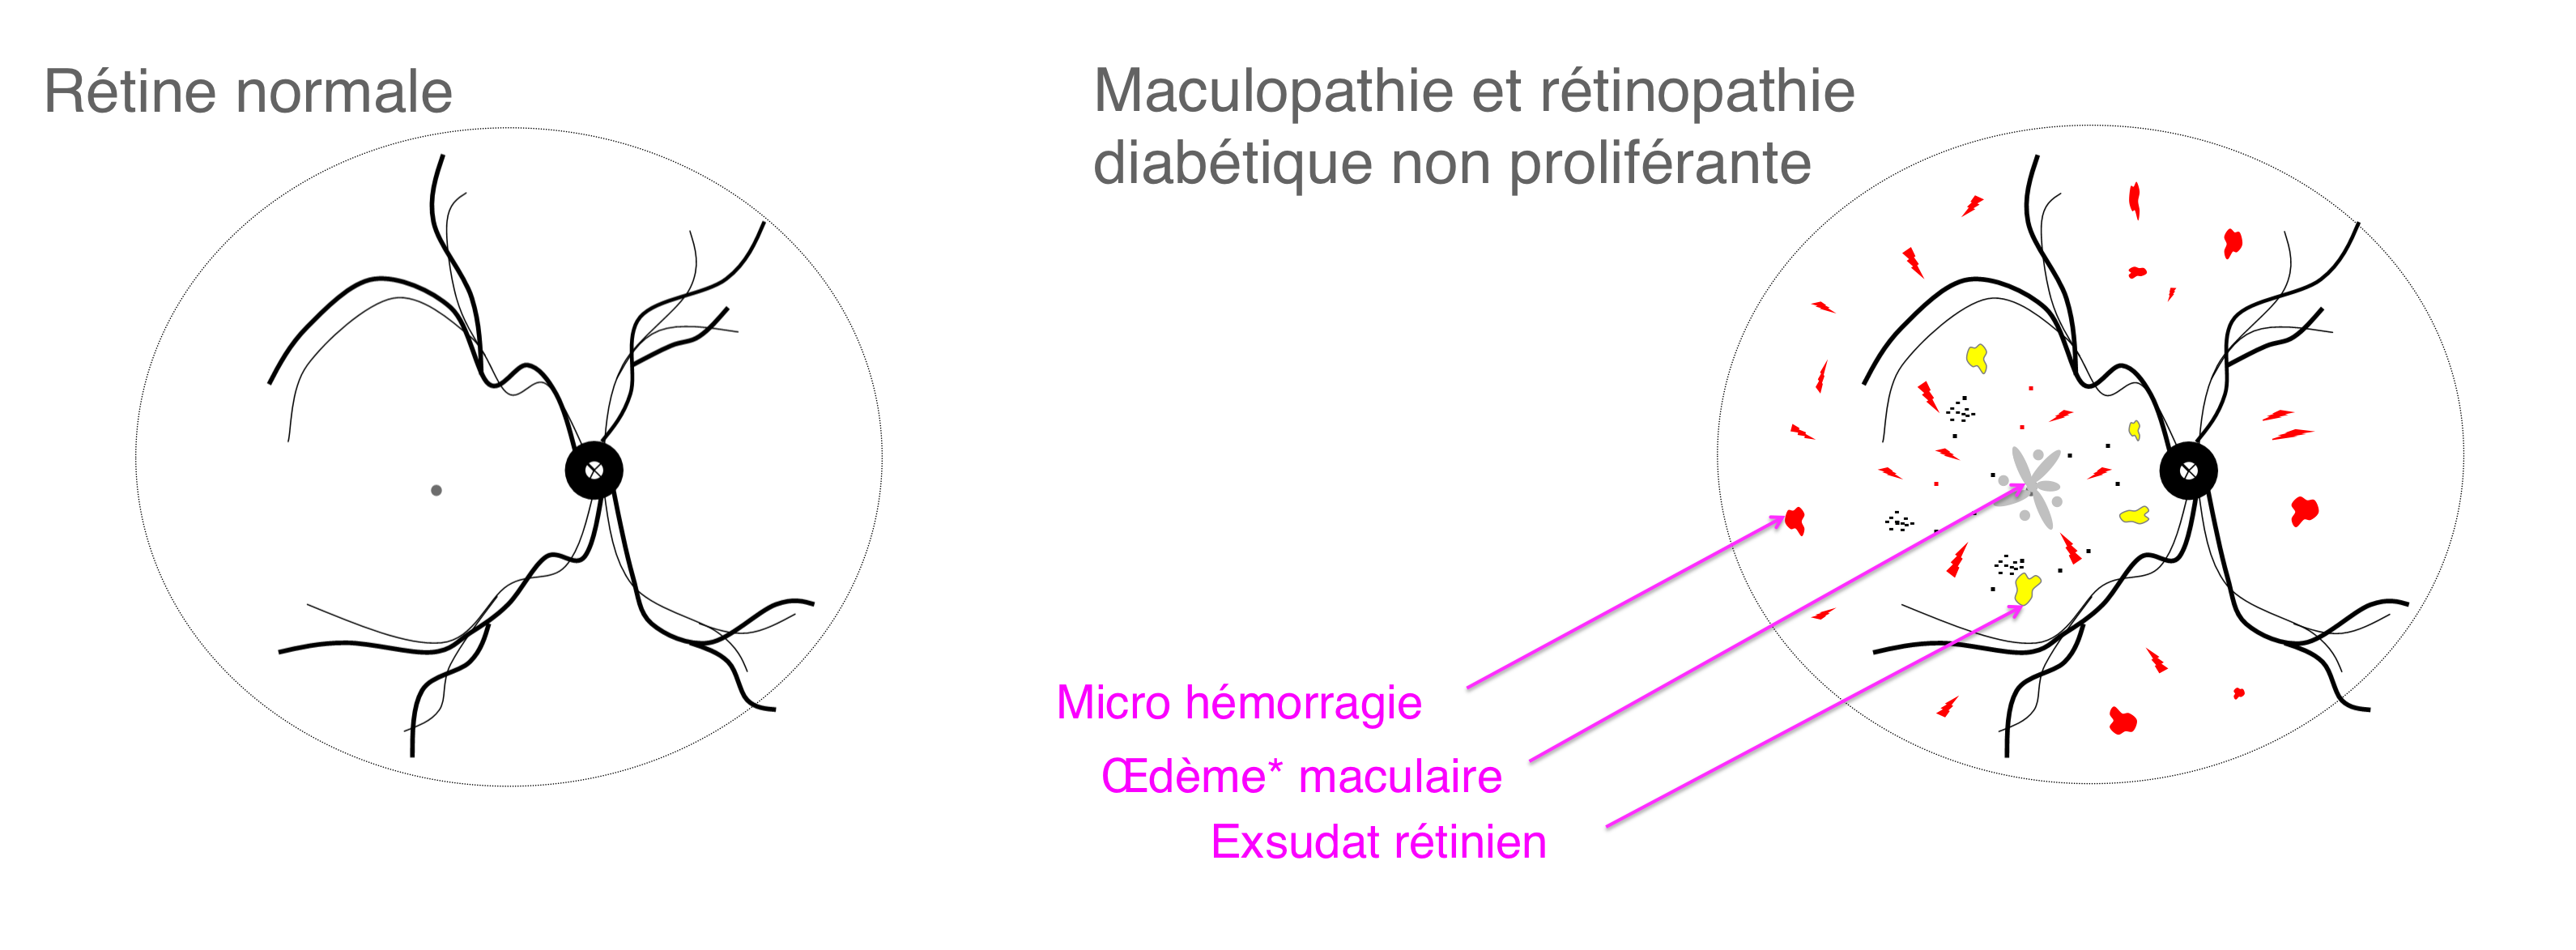 les complications rétiniennes liées au diabète : les signes de rétinopathie et de maculopathie diabétique